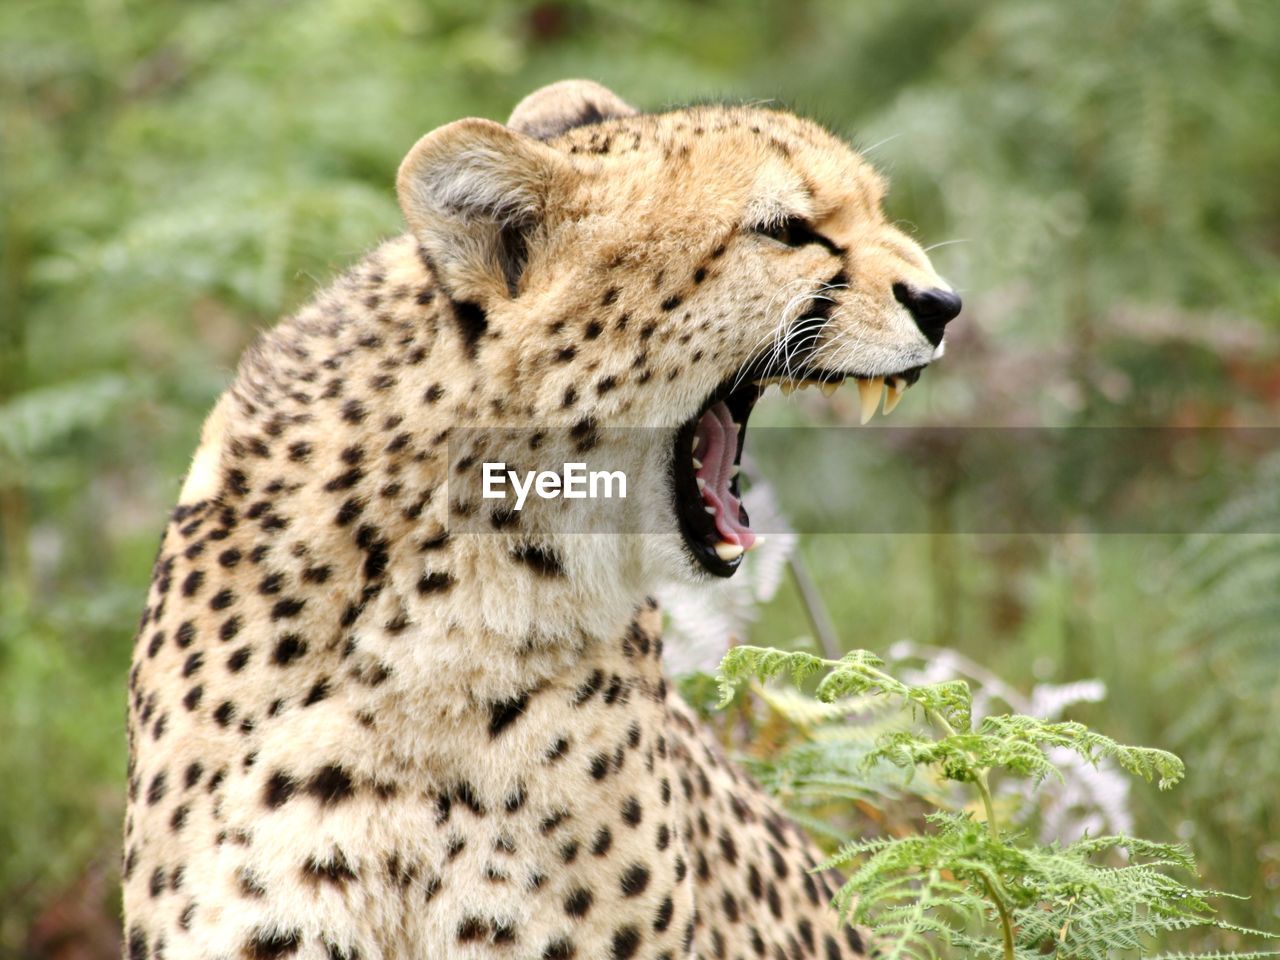 Close-up of cheetah snarling